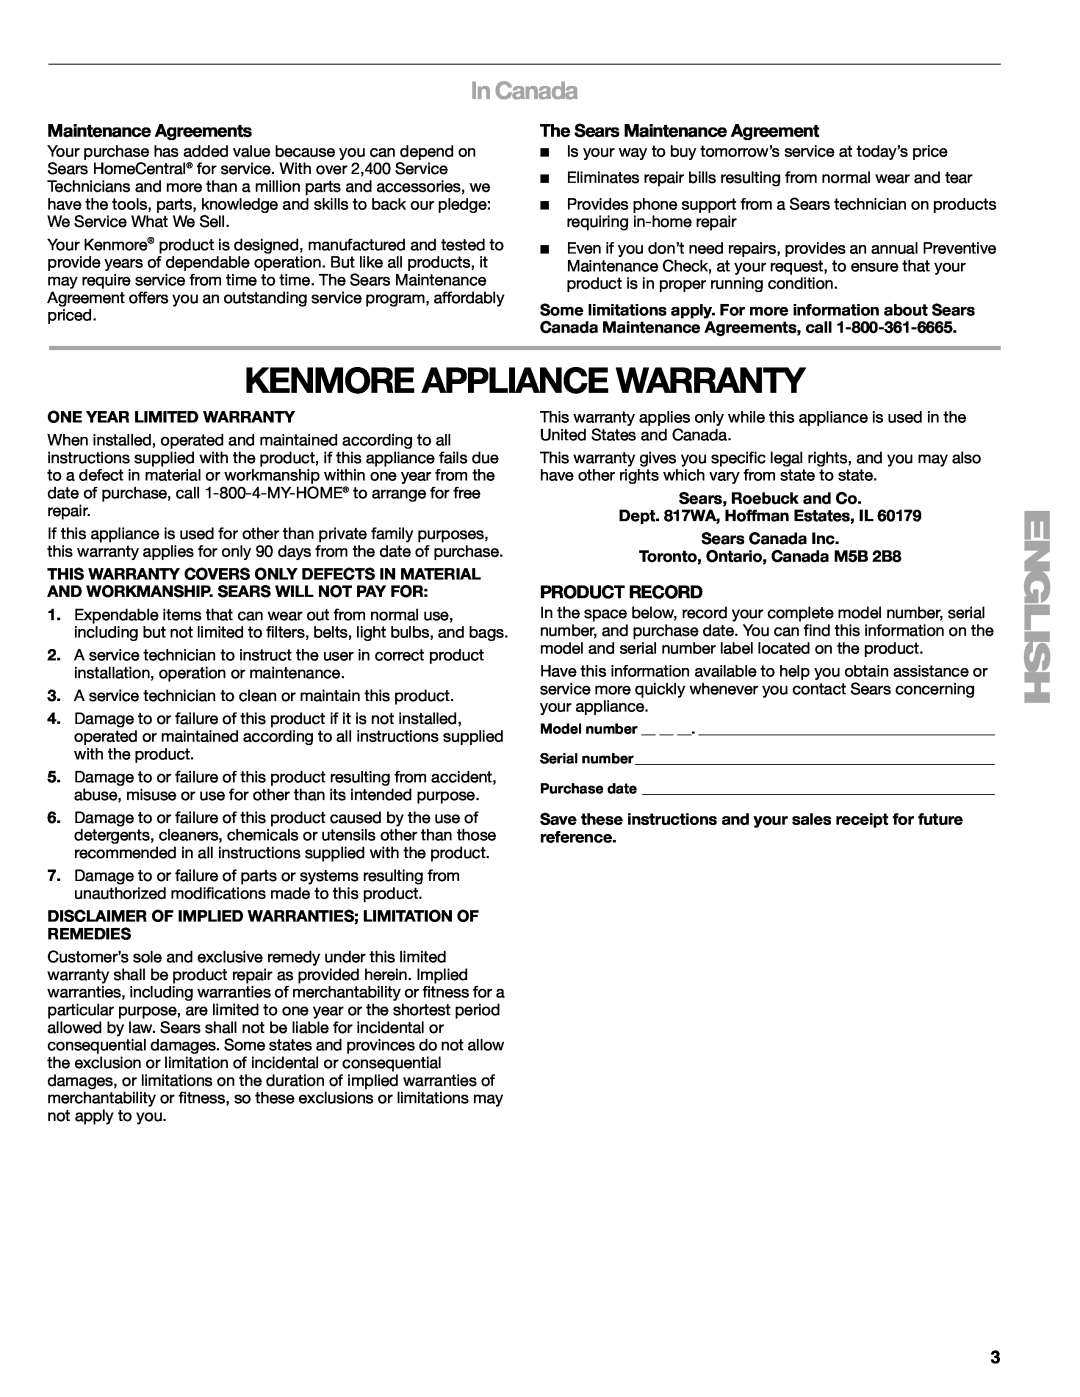 Sears 665.1369, 665.1359 Kenmore Appliance Warranty, In Canada, Maintenance Agreements, The Sears Maintenance Agreement 